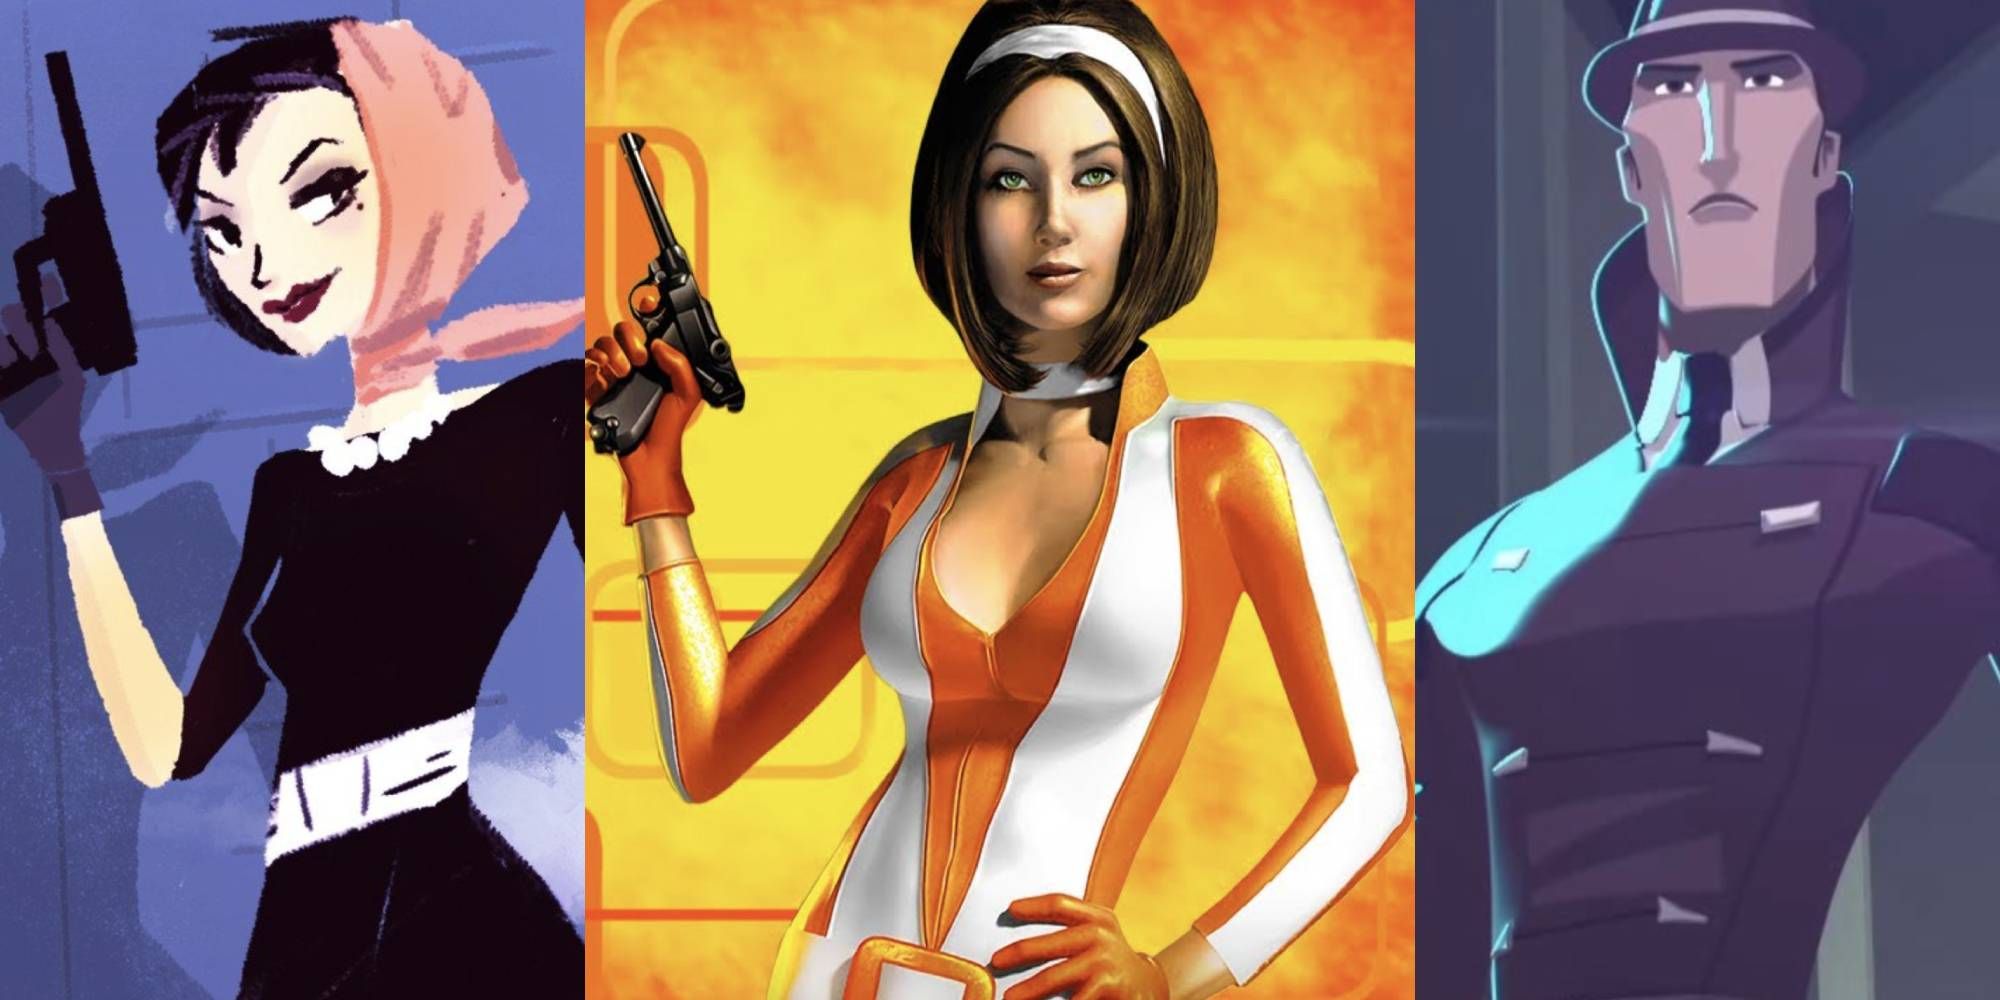 Игры шпионов 2020 отзывы. Шпионка образ. Игры шпионов. Образ женщины шпиона. Игры шпионов (2020).